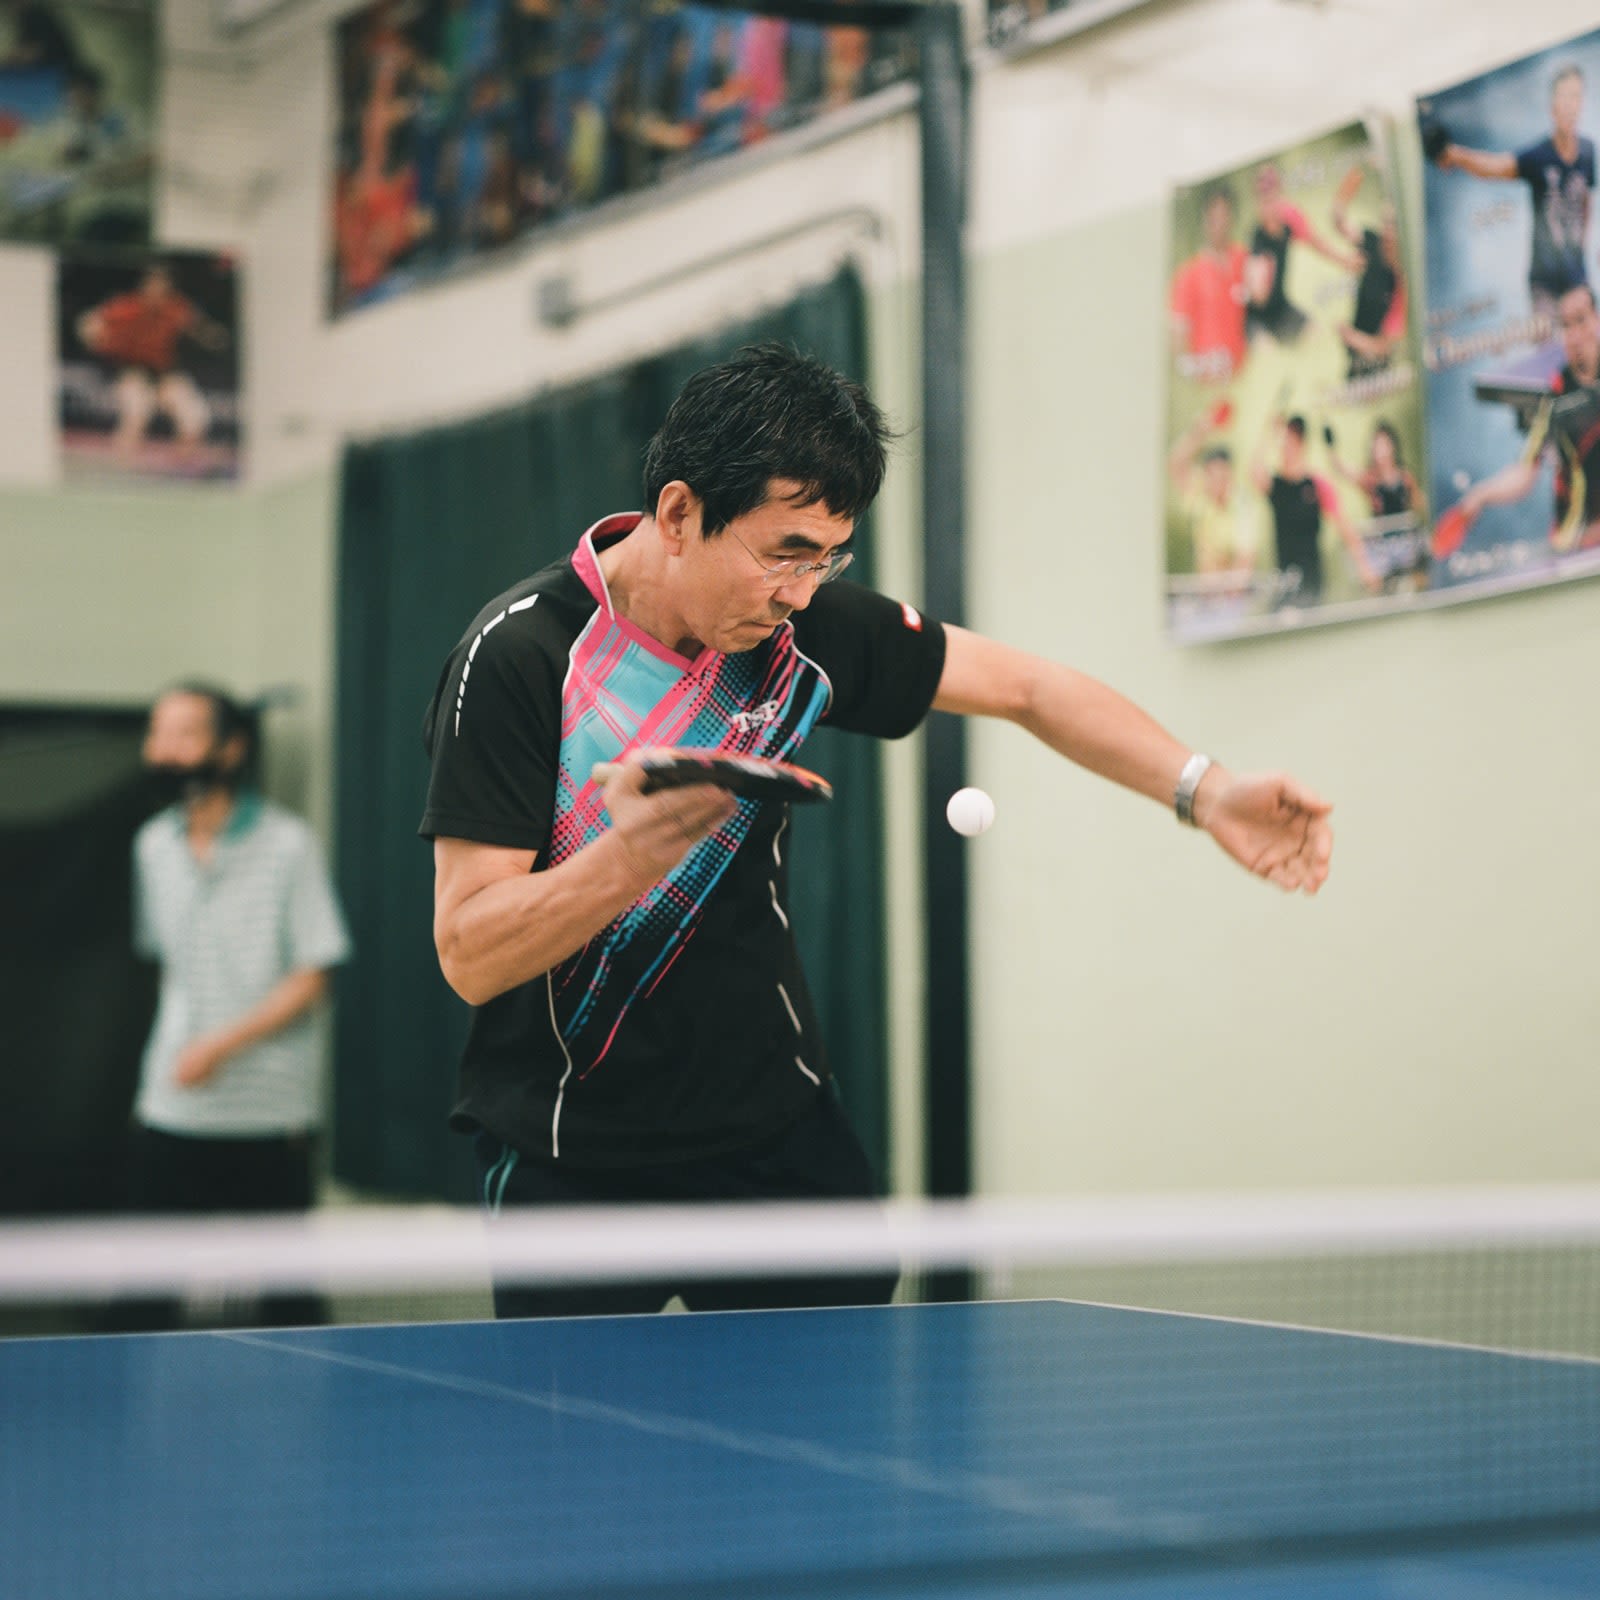 Snapshot: table tennis in Koreatown, Los Angeles